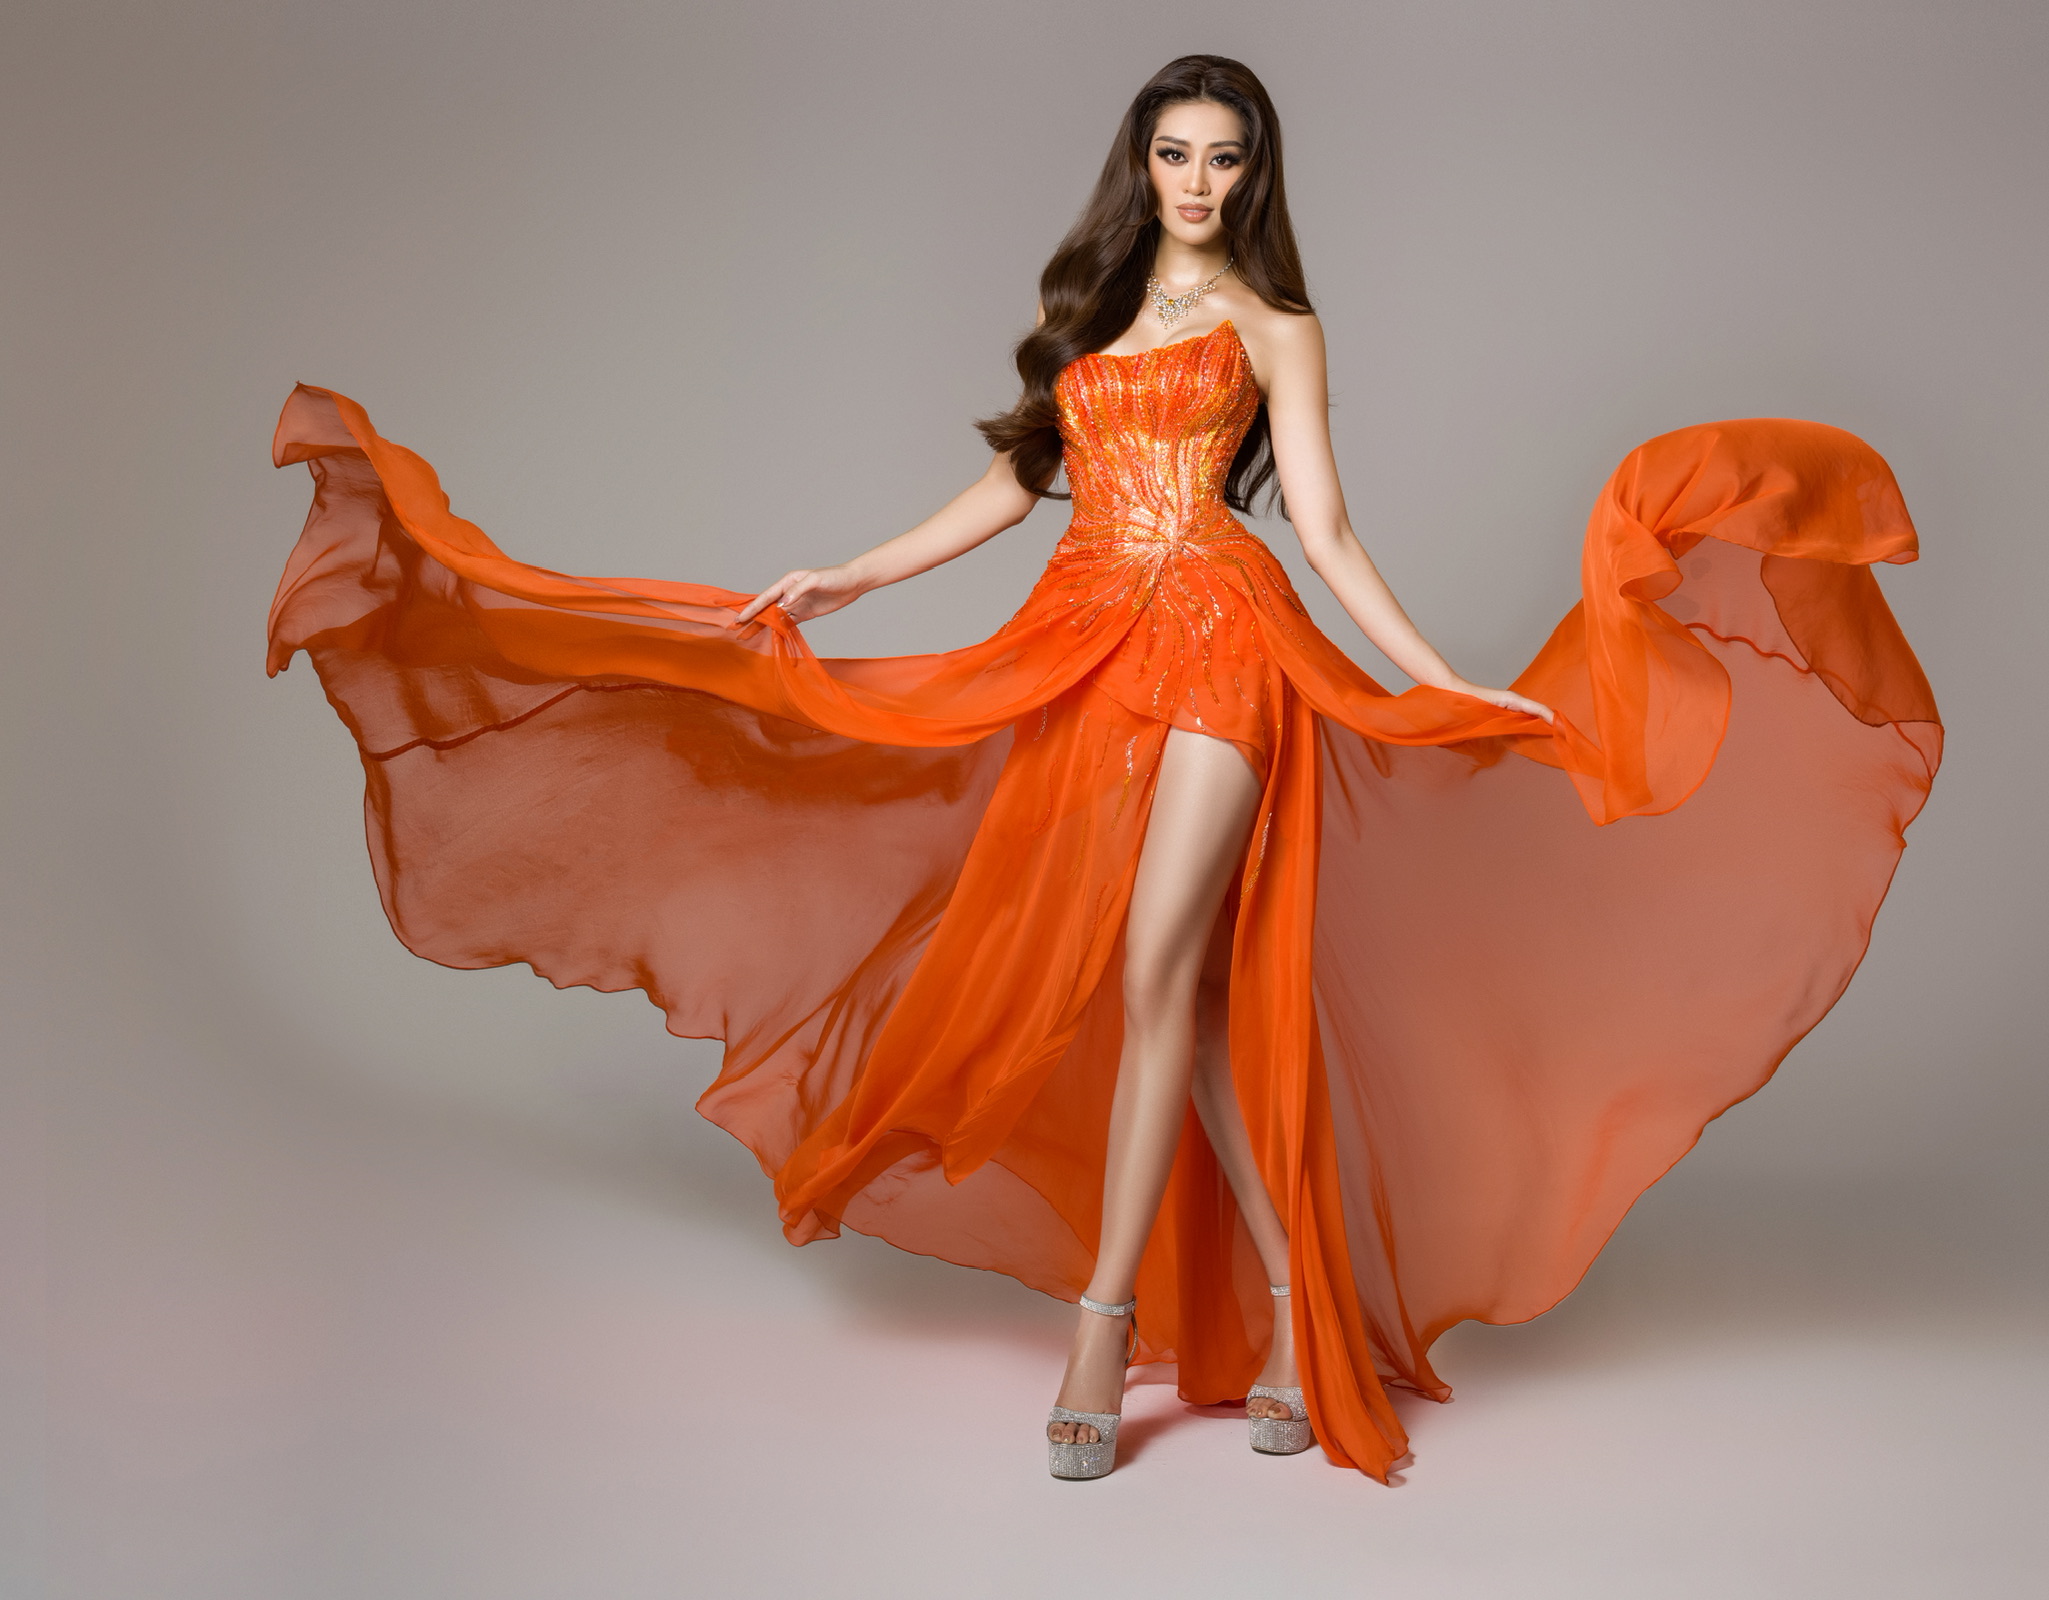 Cận cảnh bộ đồ nóng bỏng, gây ấn tượng mạnh của Khánh Vân trên sân khấu bán kết Hoa hậu Hoàn vũ Thế giới 2020 - Ảnh 5.